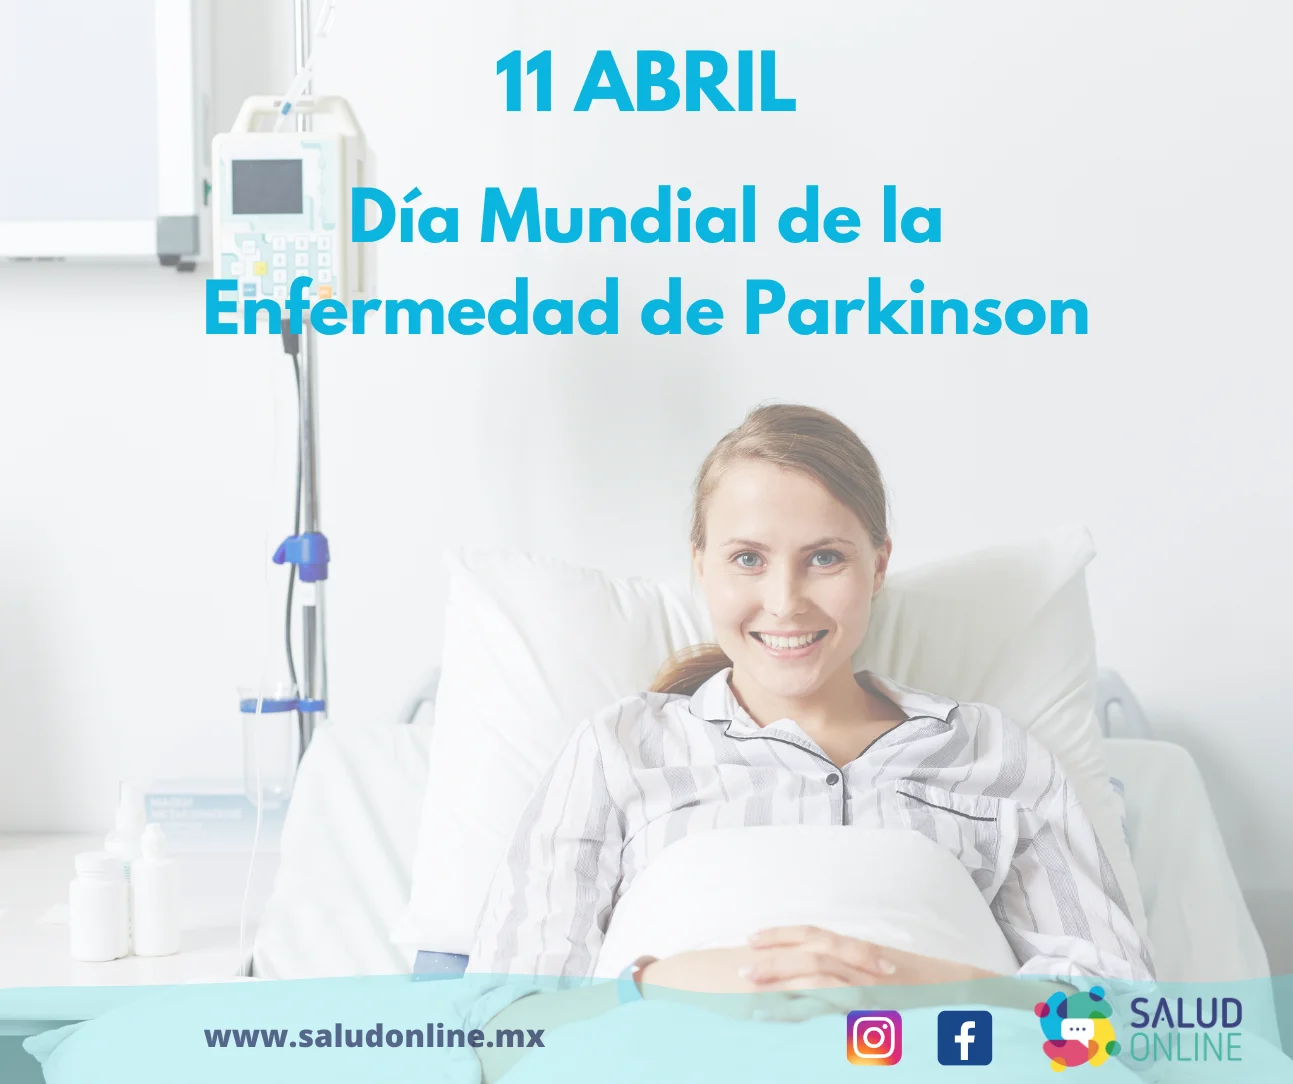 Imagen 1.- 11 de abril día mundial de de la Enfermedad de Parkinson.